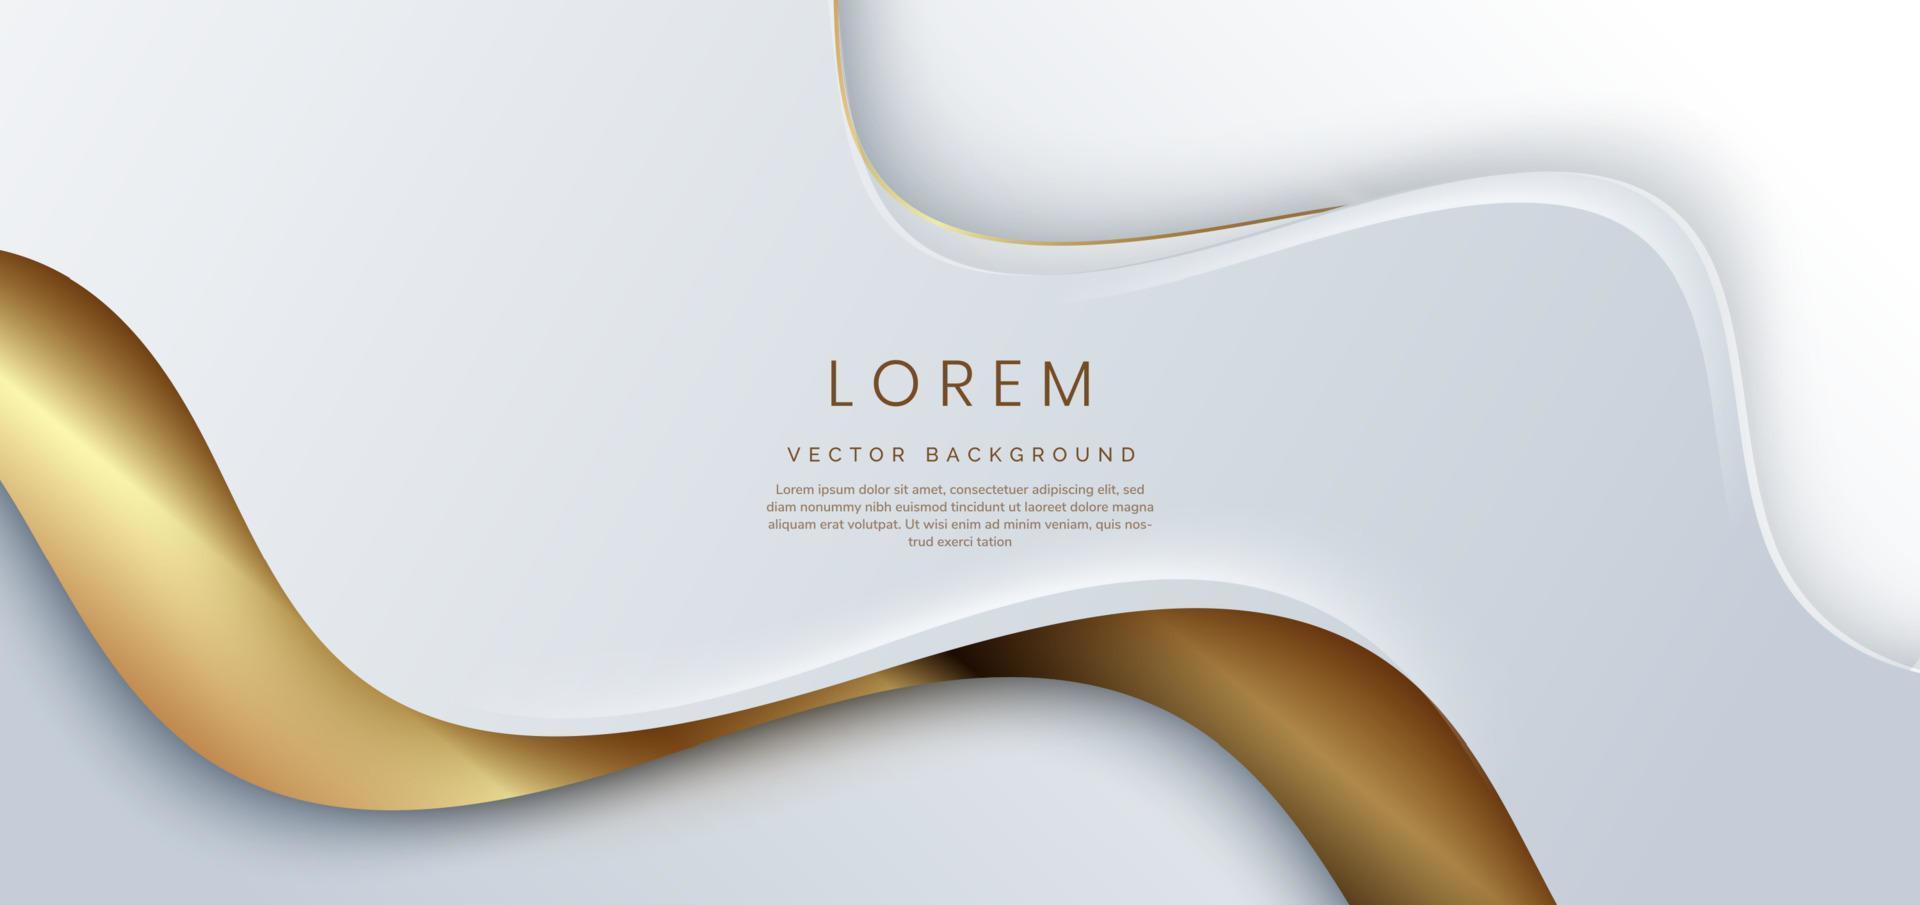 fondo blanco 3d abstracto con líneas doradas con brillo ondulado curvo con espacio de copia para texto. diseño de plantilla de estilo de lujo. vector